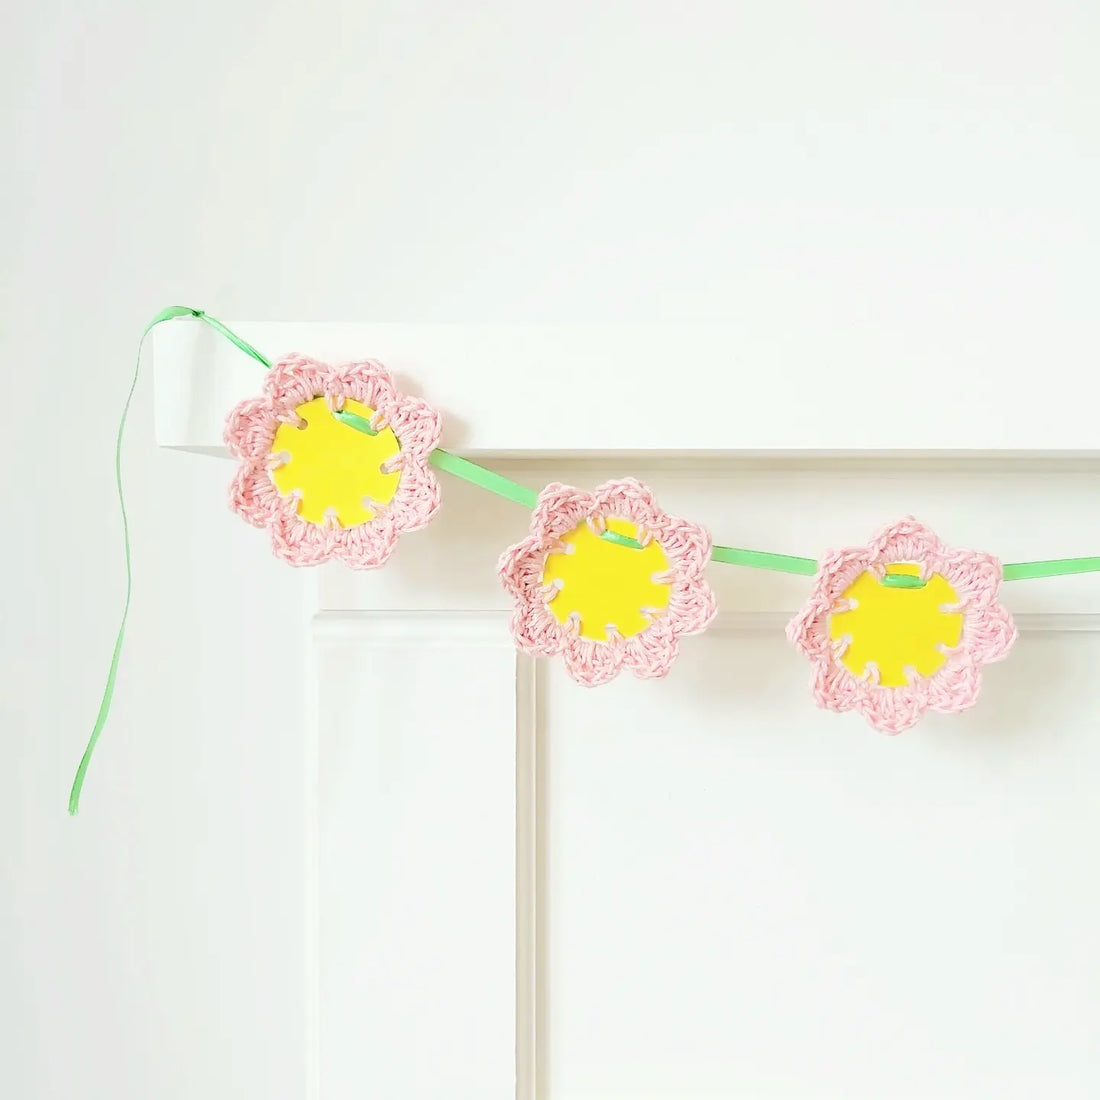 Crochet + Paper Flowers